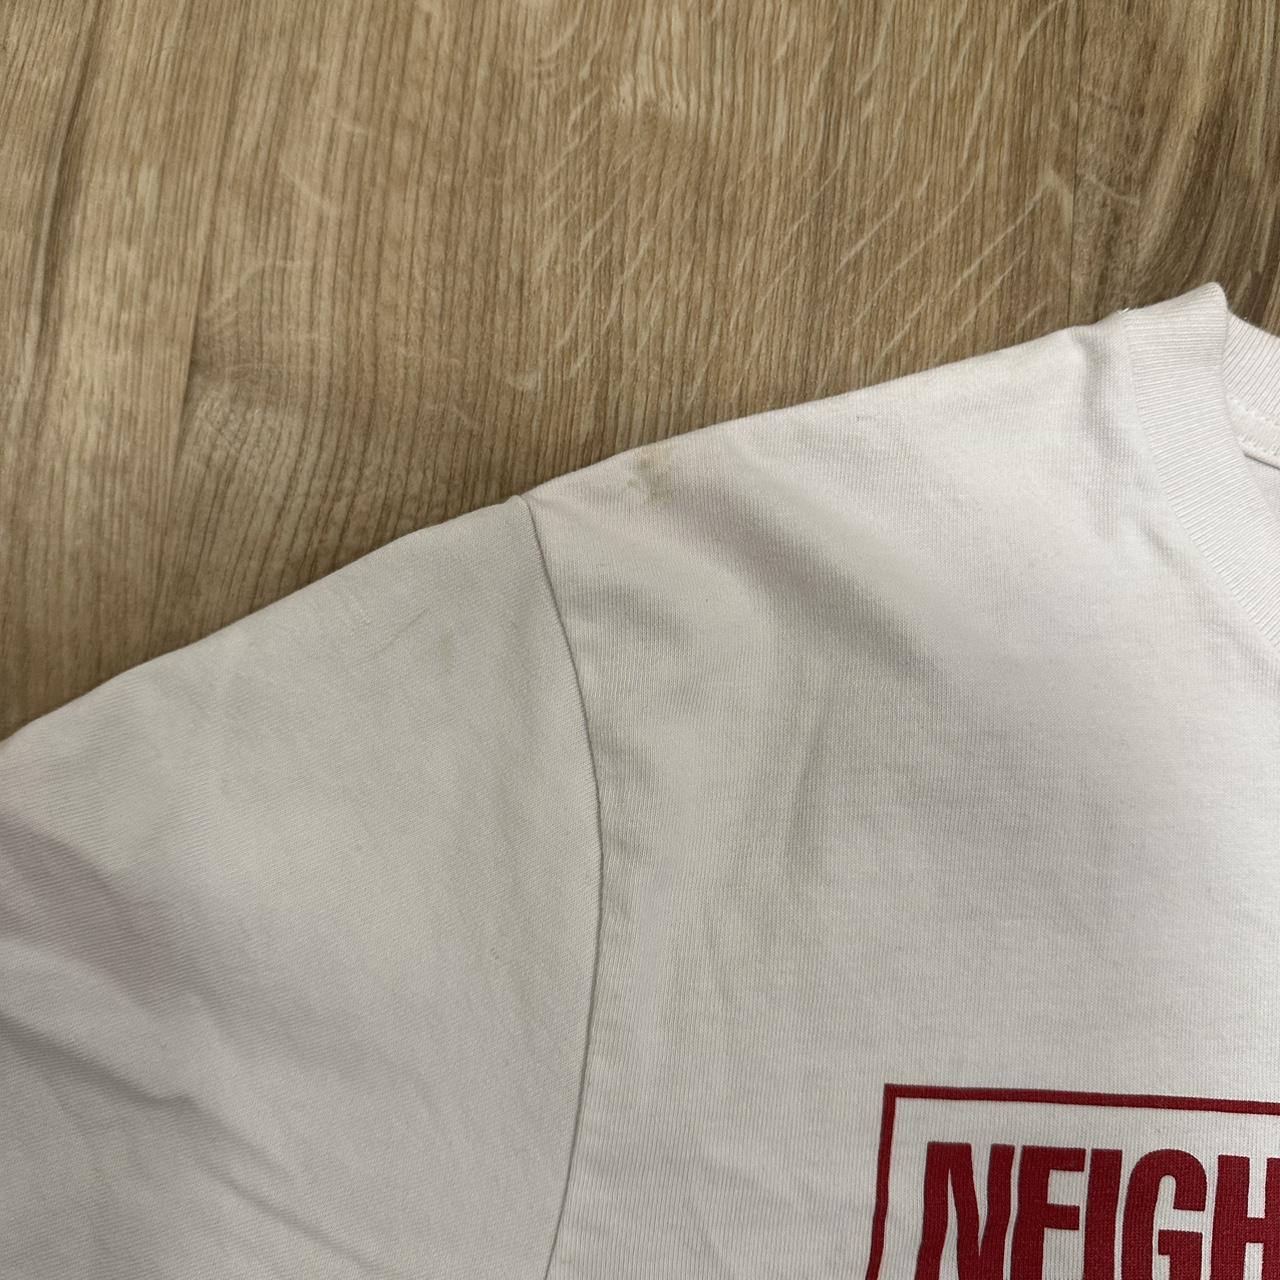 Neighborhood Men's White and Red T-shirt (4)